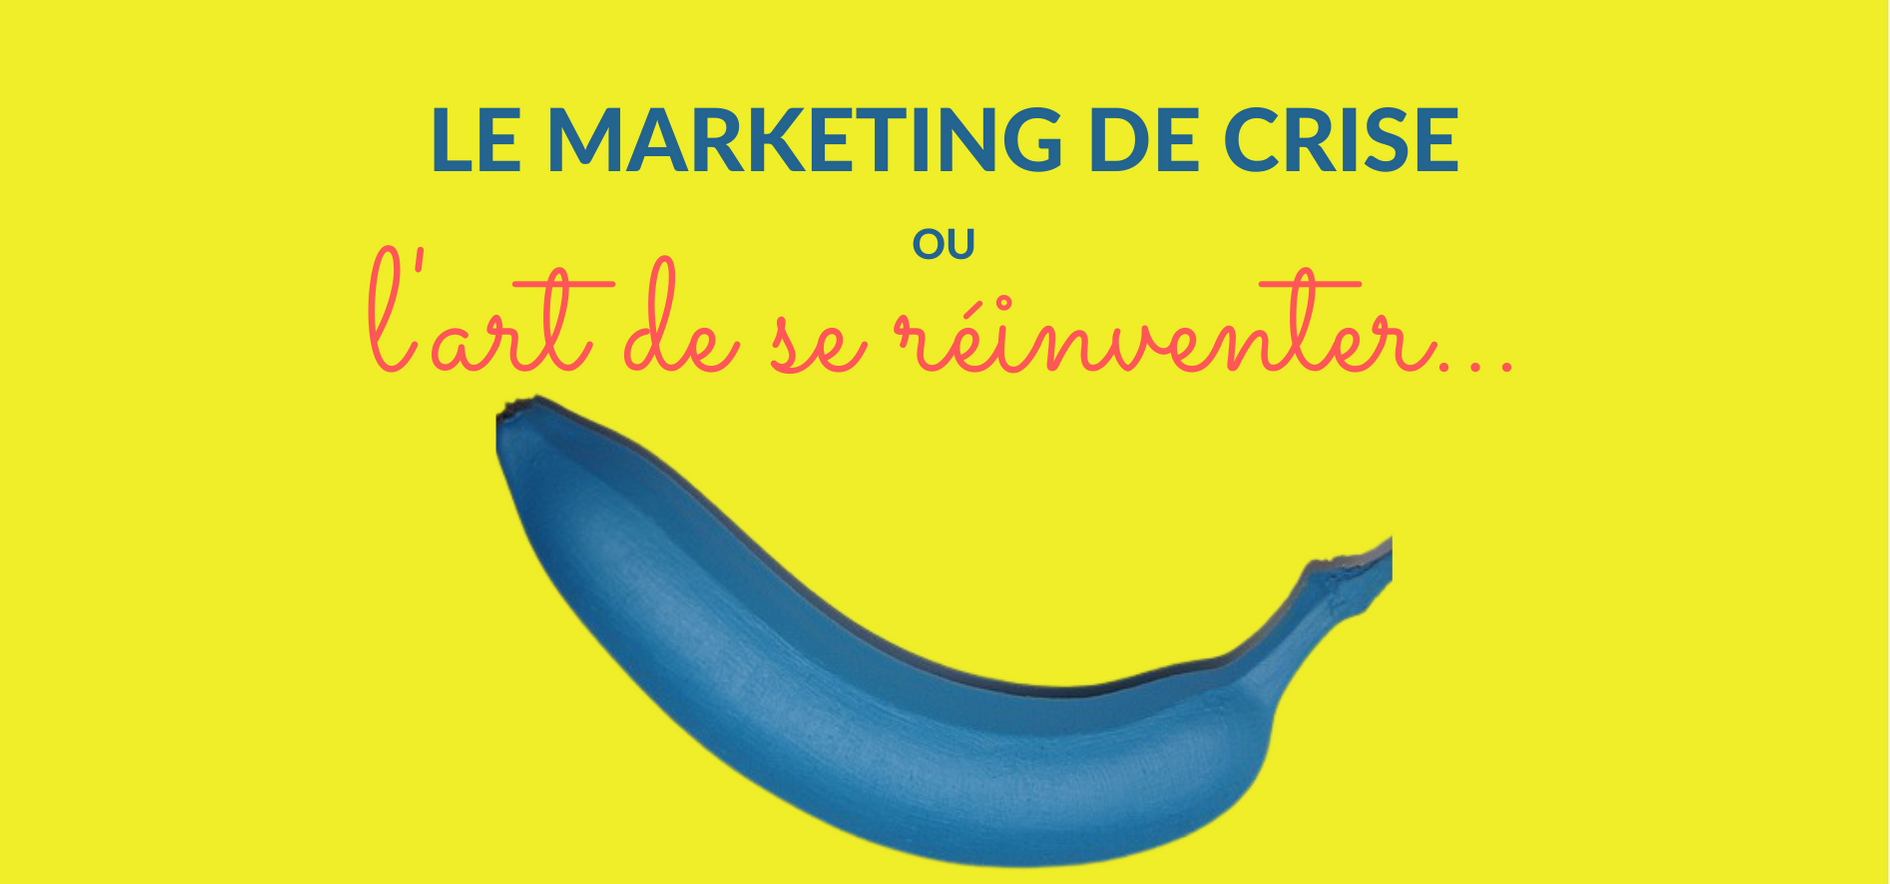 Article Le marketing de crise - AD LINE Conseil Cabinet Communication Sensible et de crise Martinique Guadeloupe Guyane